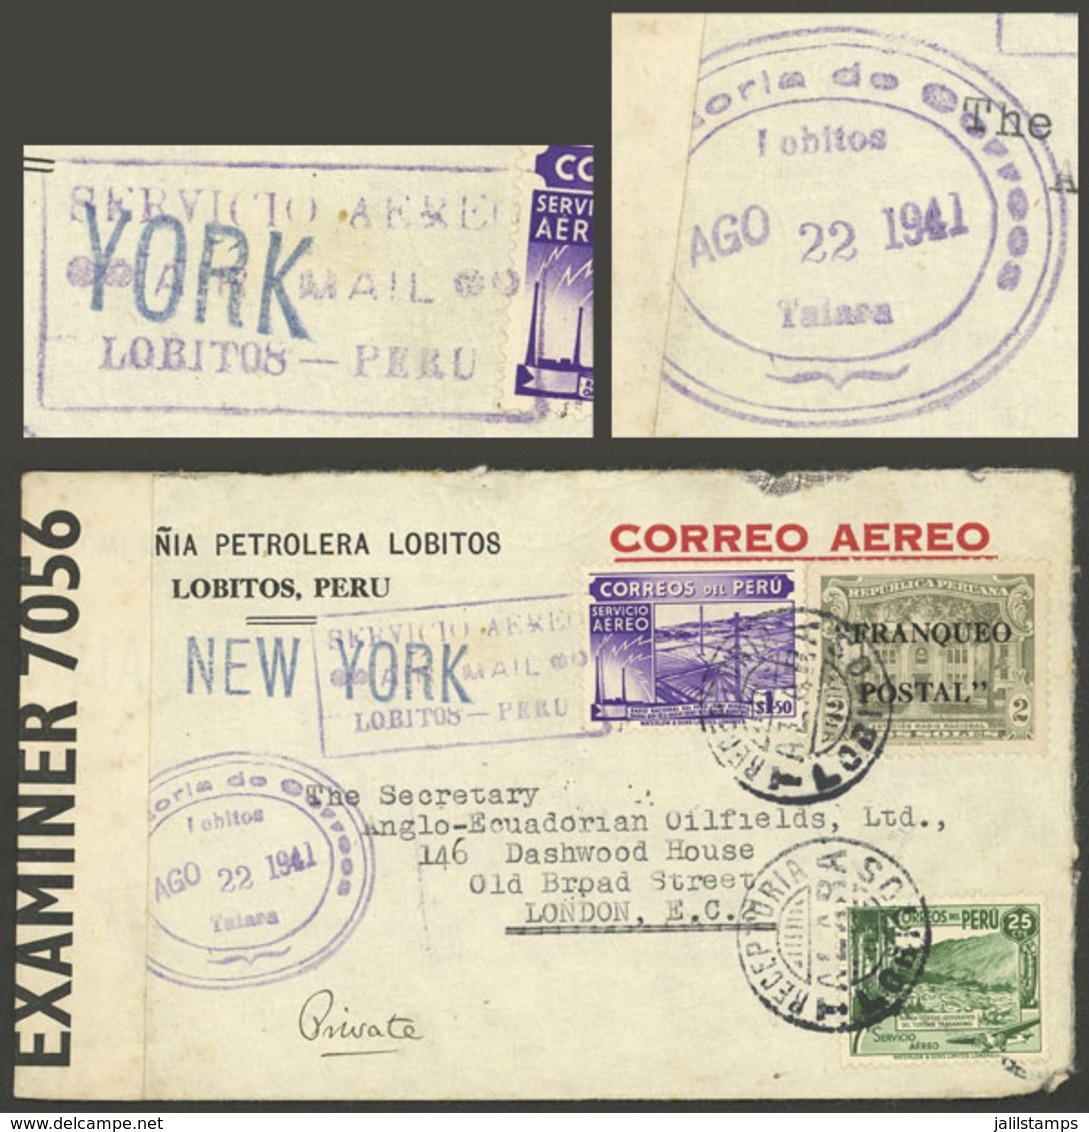 PERU: 22/AU/1941 Lobitos - England, Airmail Cover Franked With 3.75S., With The Rare Cancel "RECEPTORIA LOBITOS - TALARA - Perú